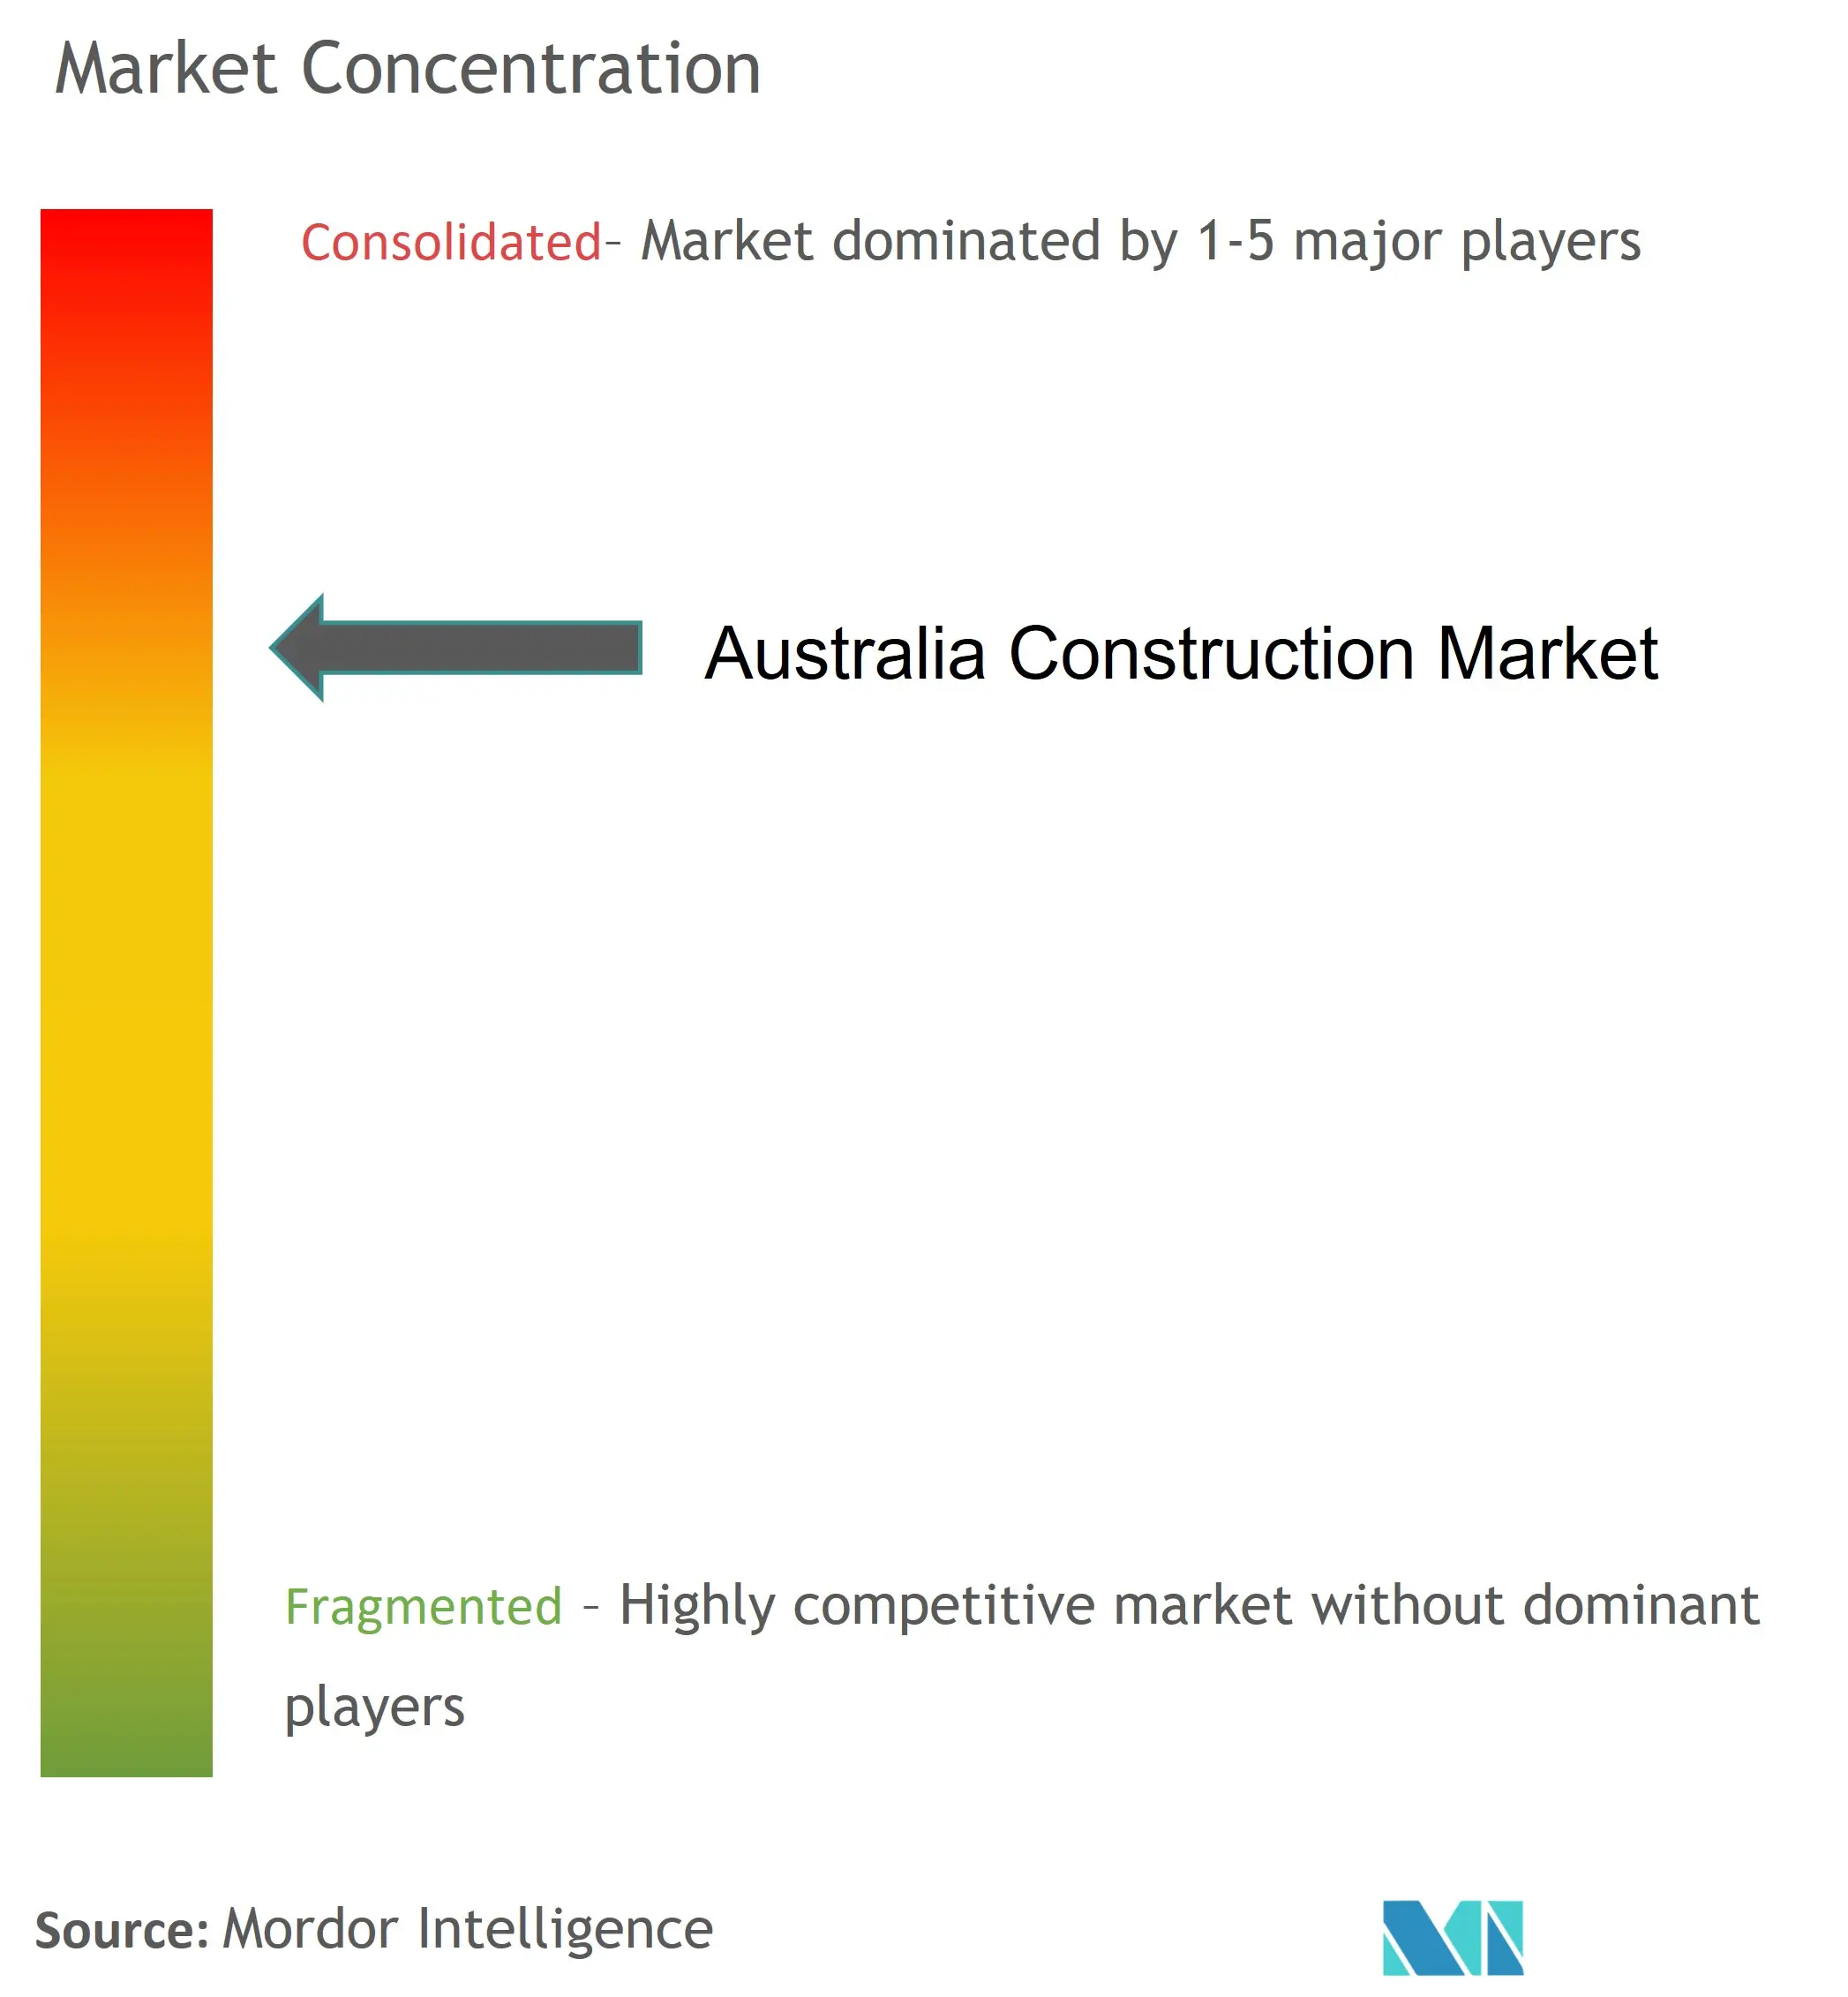 Australia Construction Market Concentration